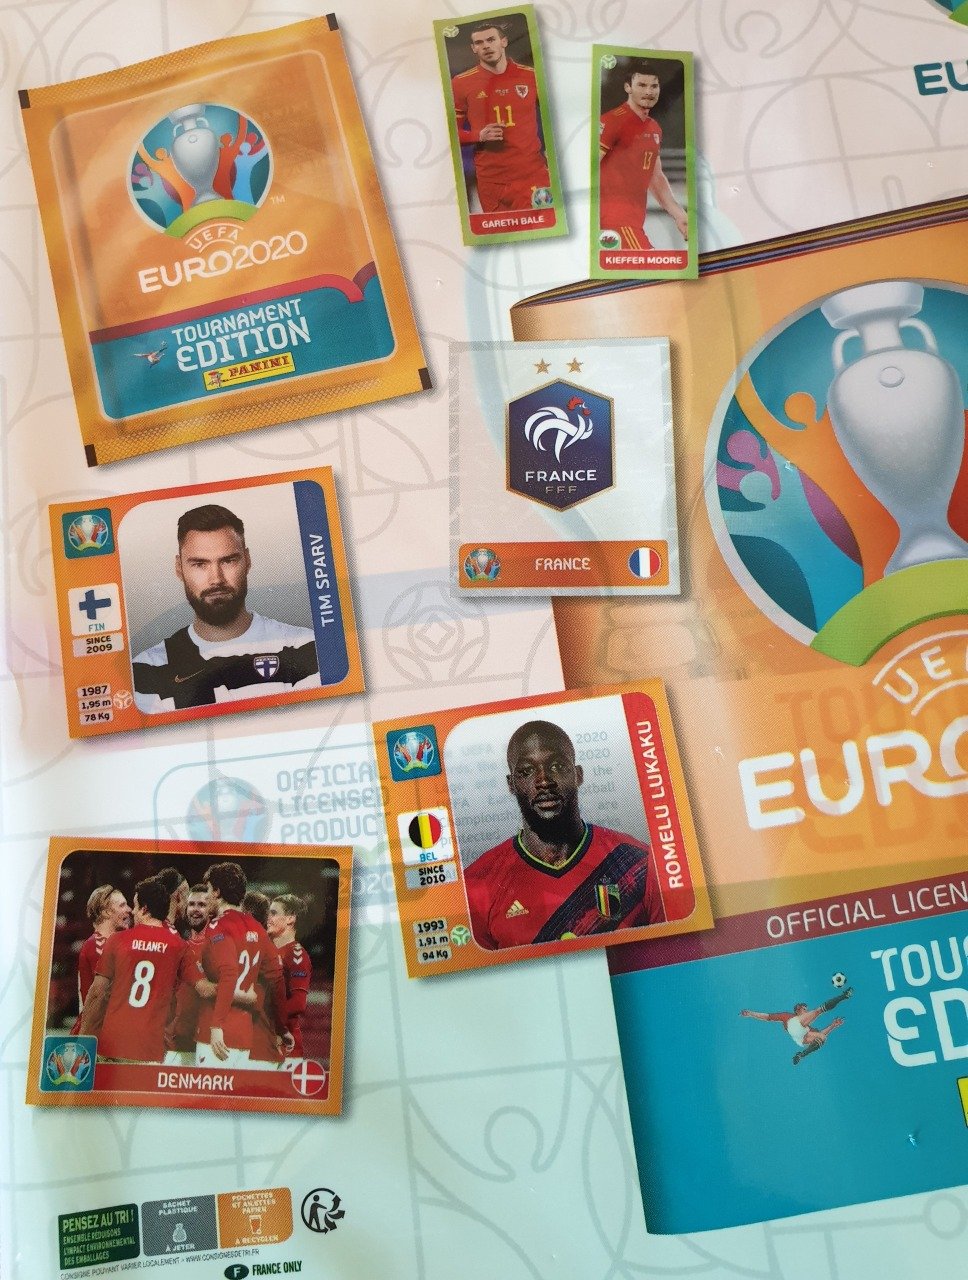 Euro 2020 Tournament image a la pièce version France